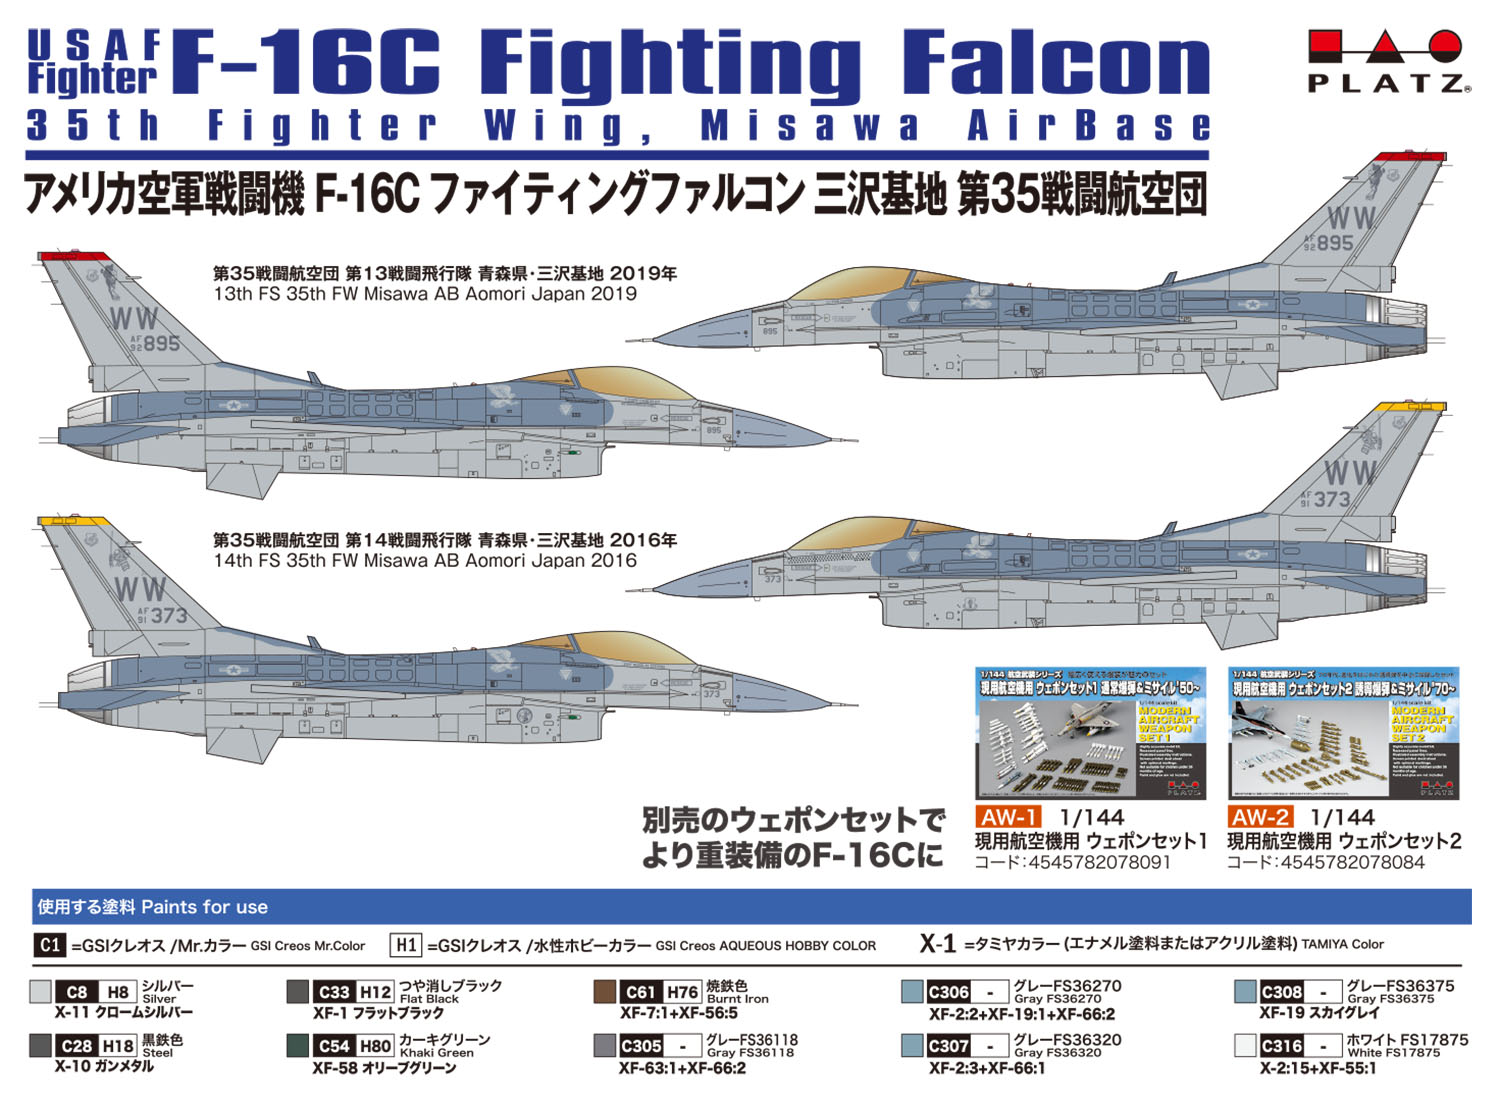 1/144 アメリカ空軍戦闘機 F-16Cファイティングファルコン 三沢基地 第 